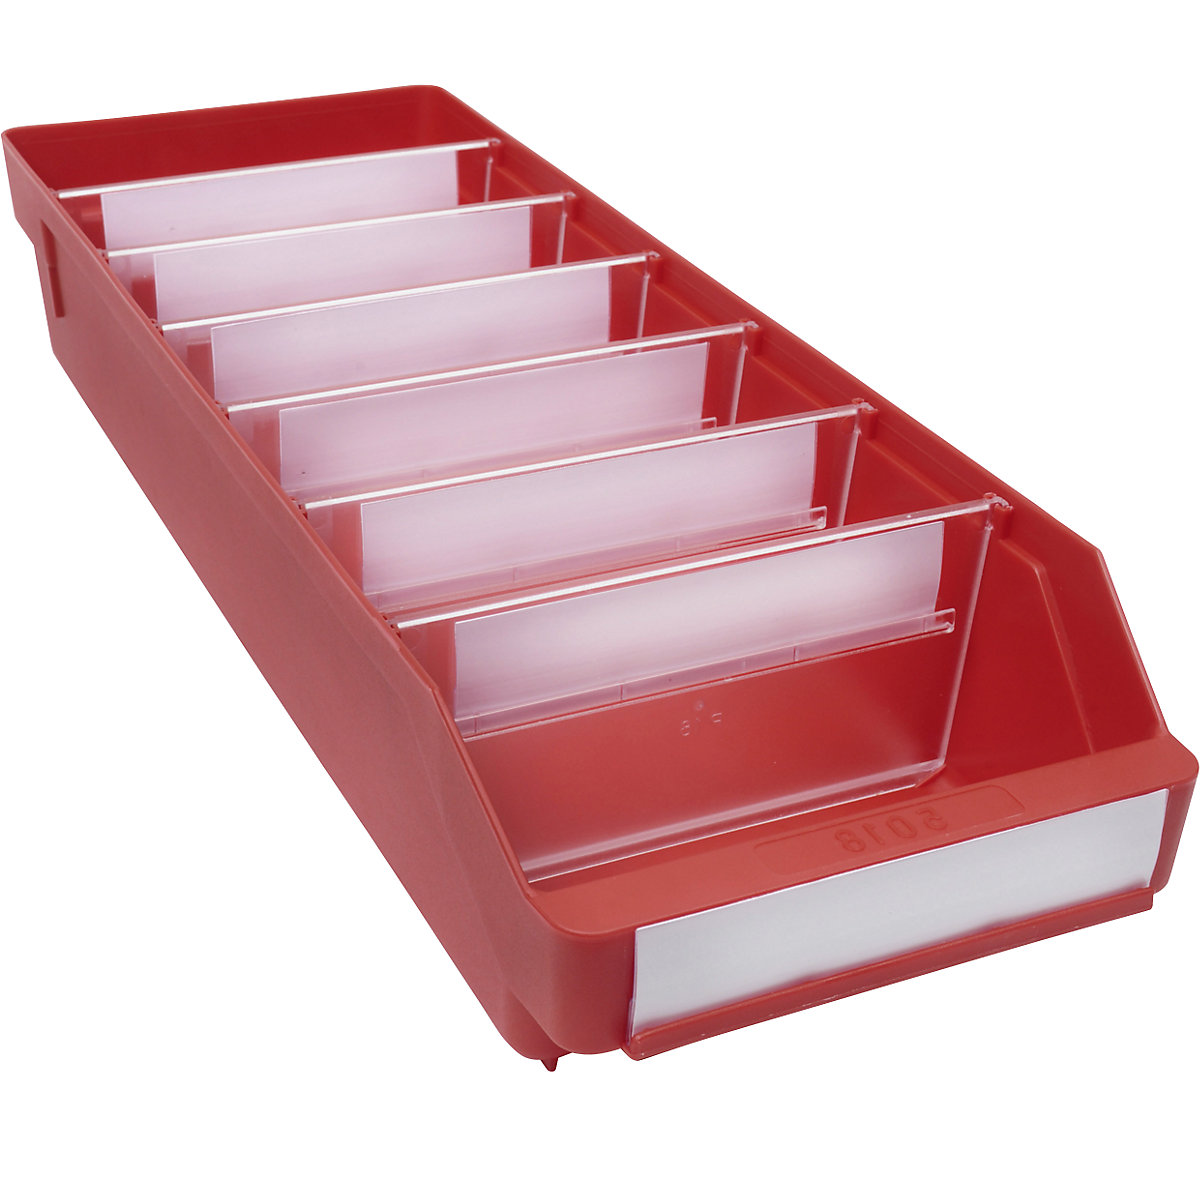 Regalkasten aus hochschlagfestem Polypropylen STEMO, rot, LxBxH 500 x 180 x 95 mm, VE 20 Stk-20